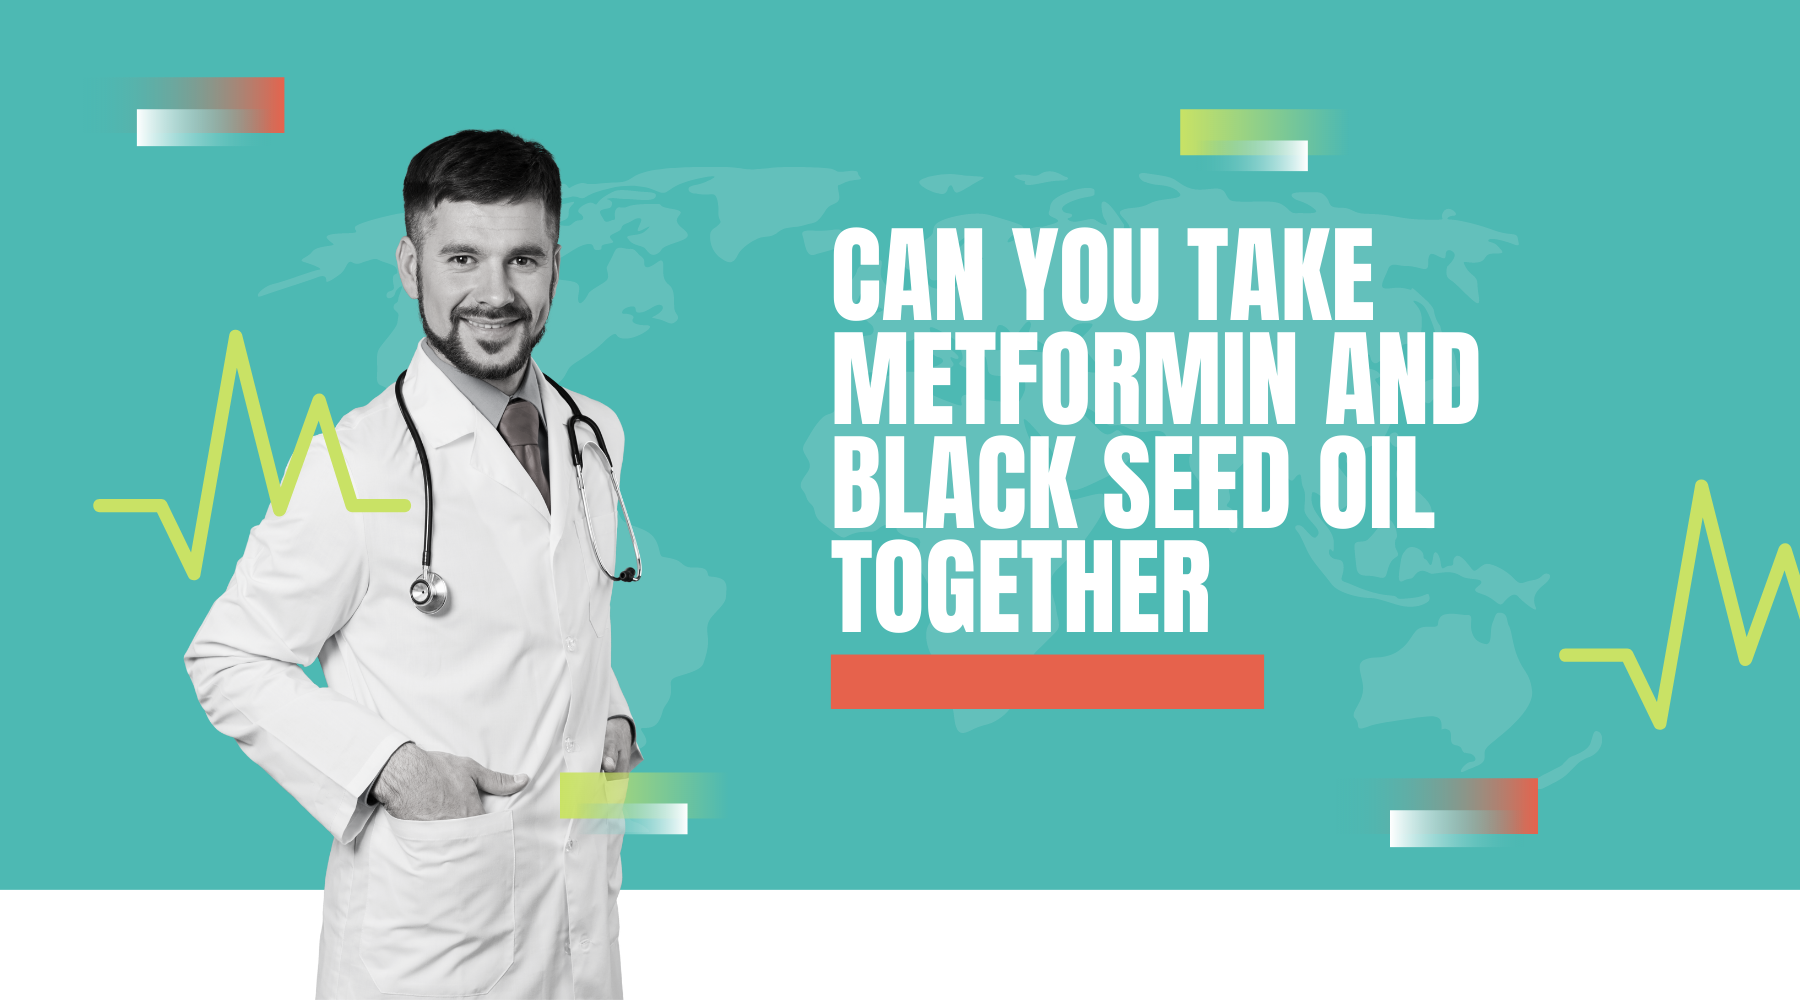 Benefits of Black Seed Oil in Diabetes